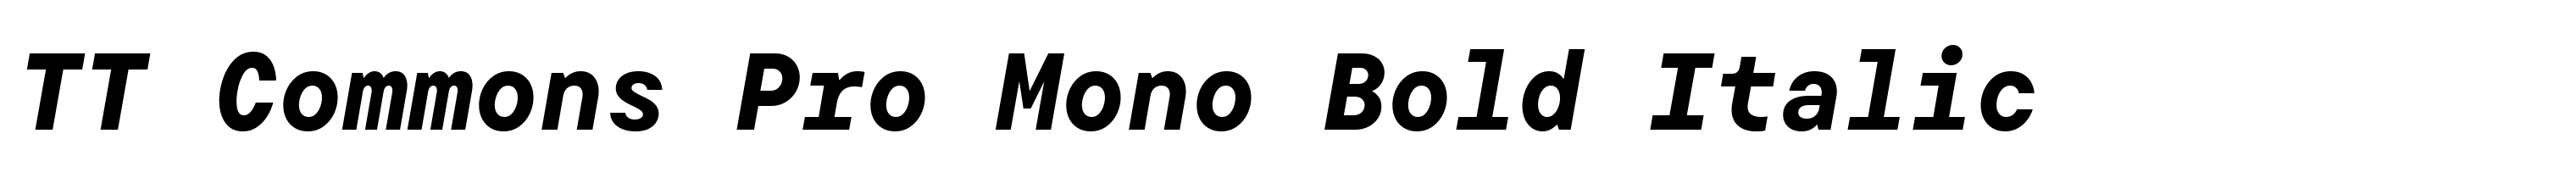 TT Commons Pro Mono Bold Italic